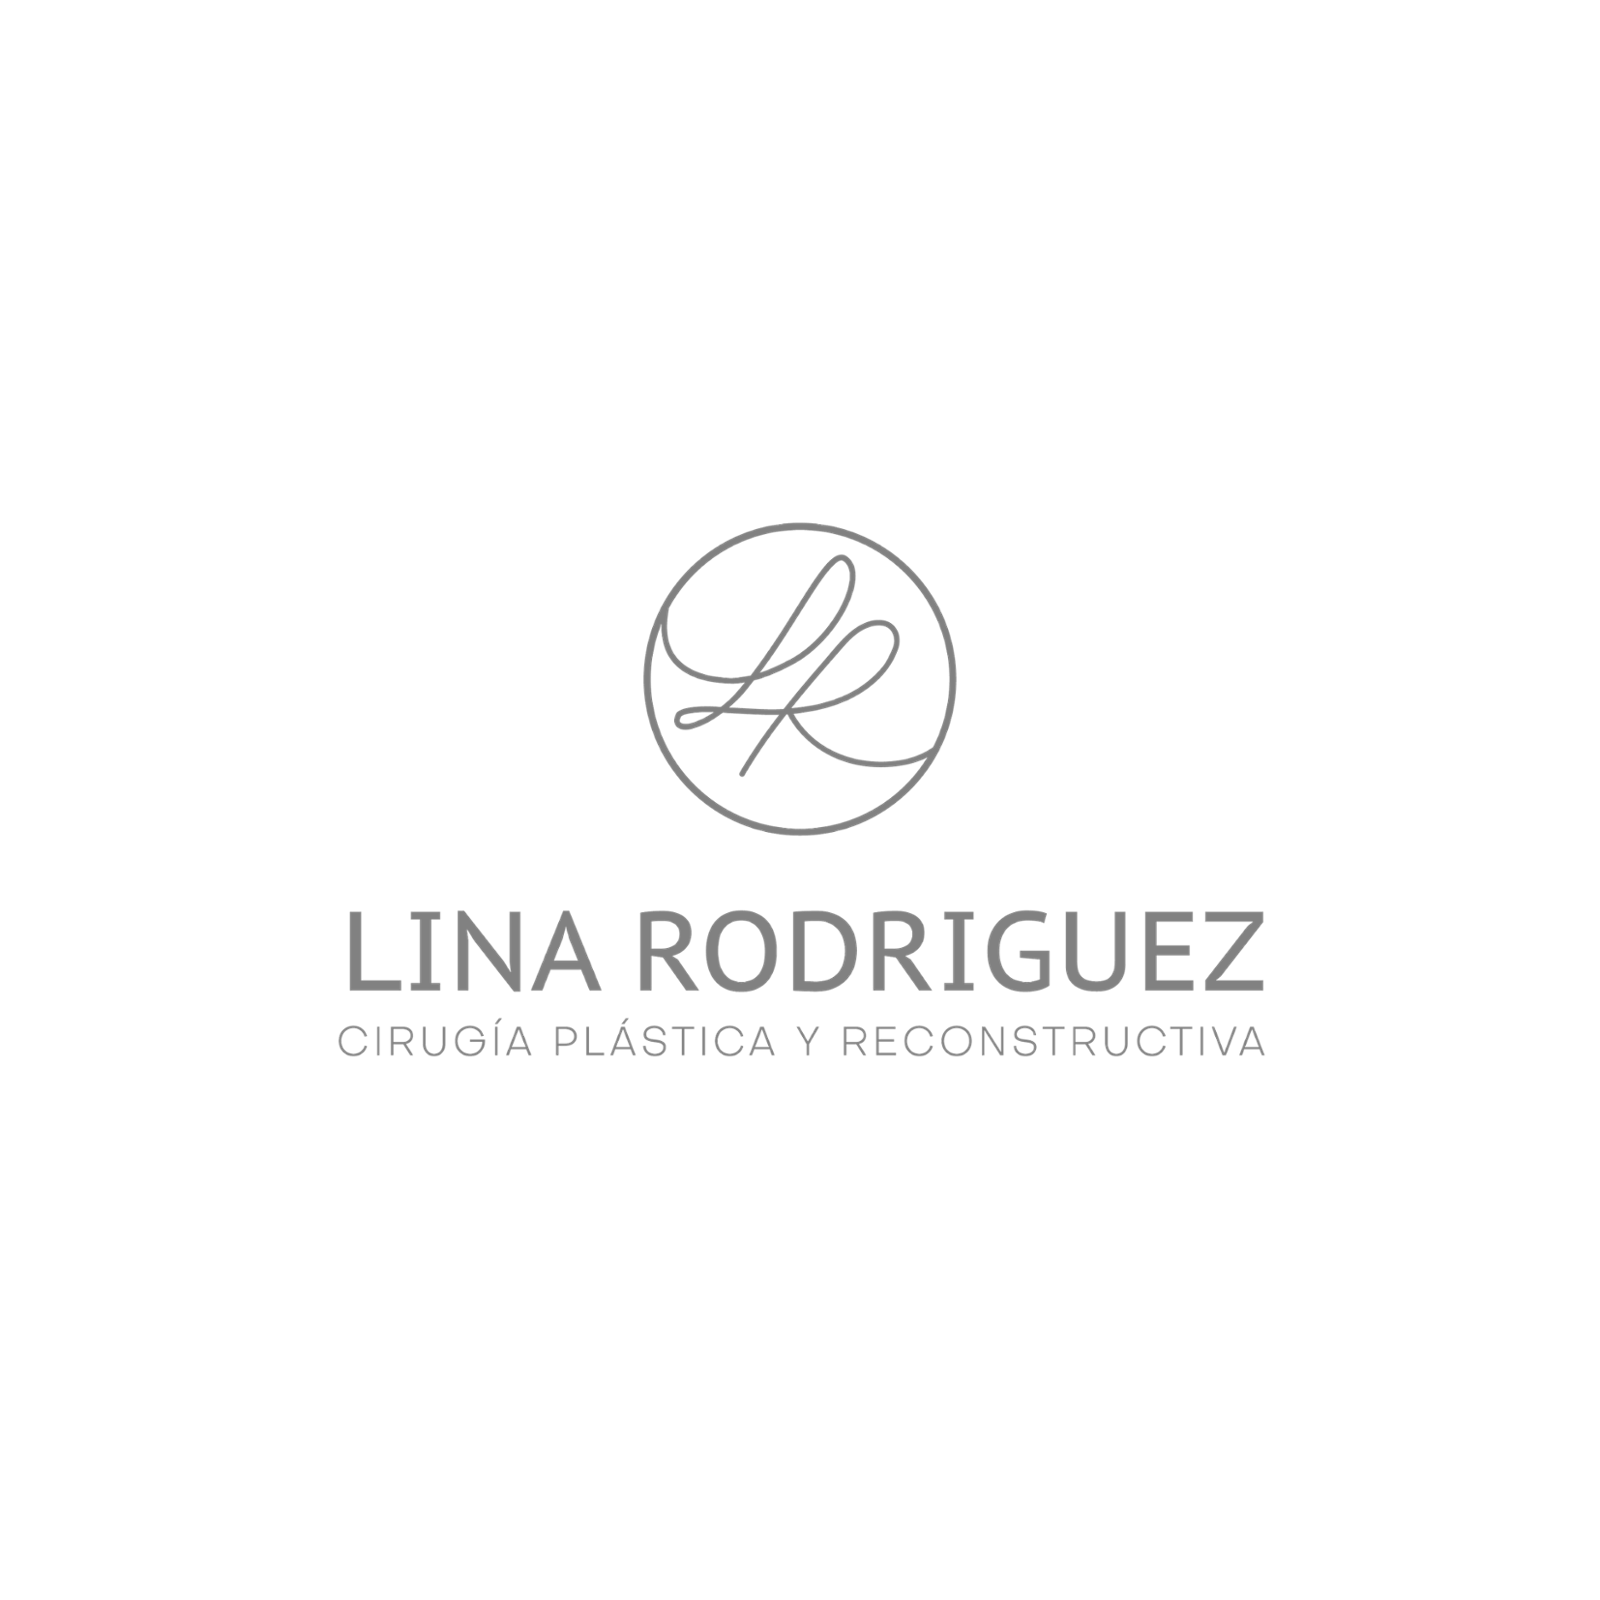 Dr. Lina Rodriguez